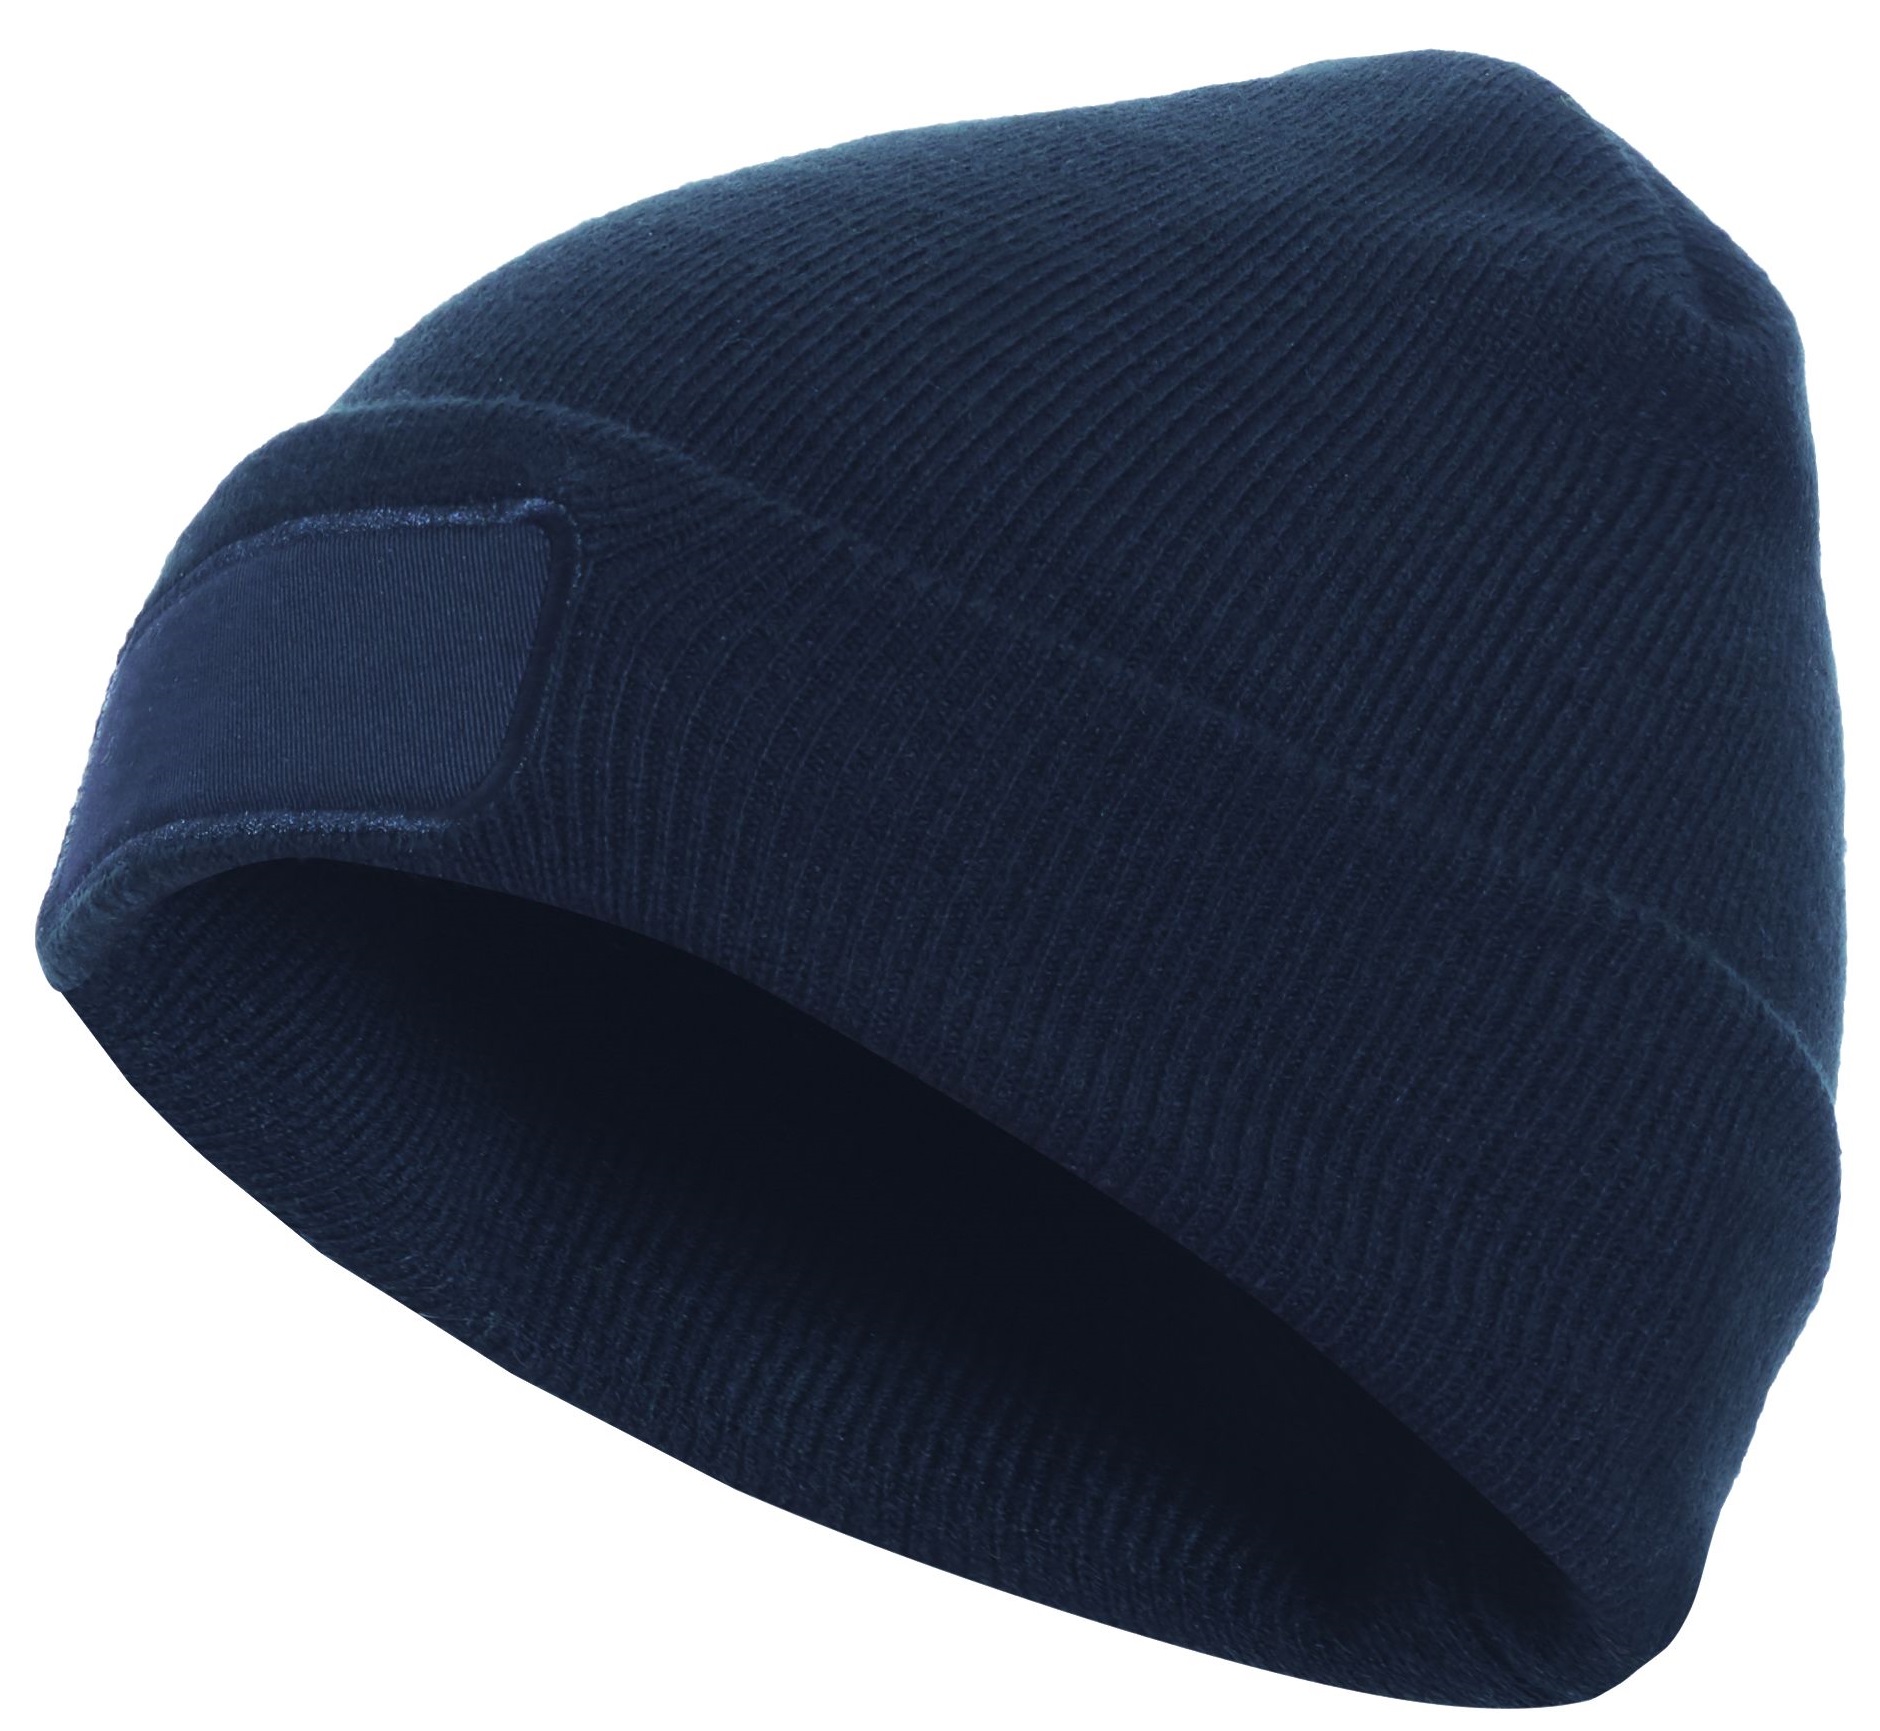 F-ELYSEE-Kälteschutz, -Thinsulate-Mütze, bedruckbar, *MARLON*, marine
